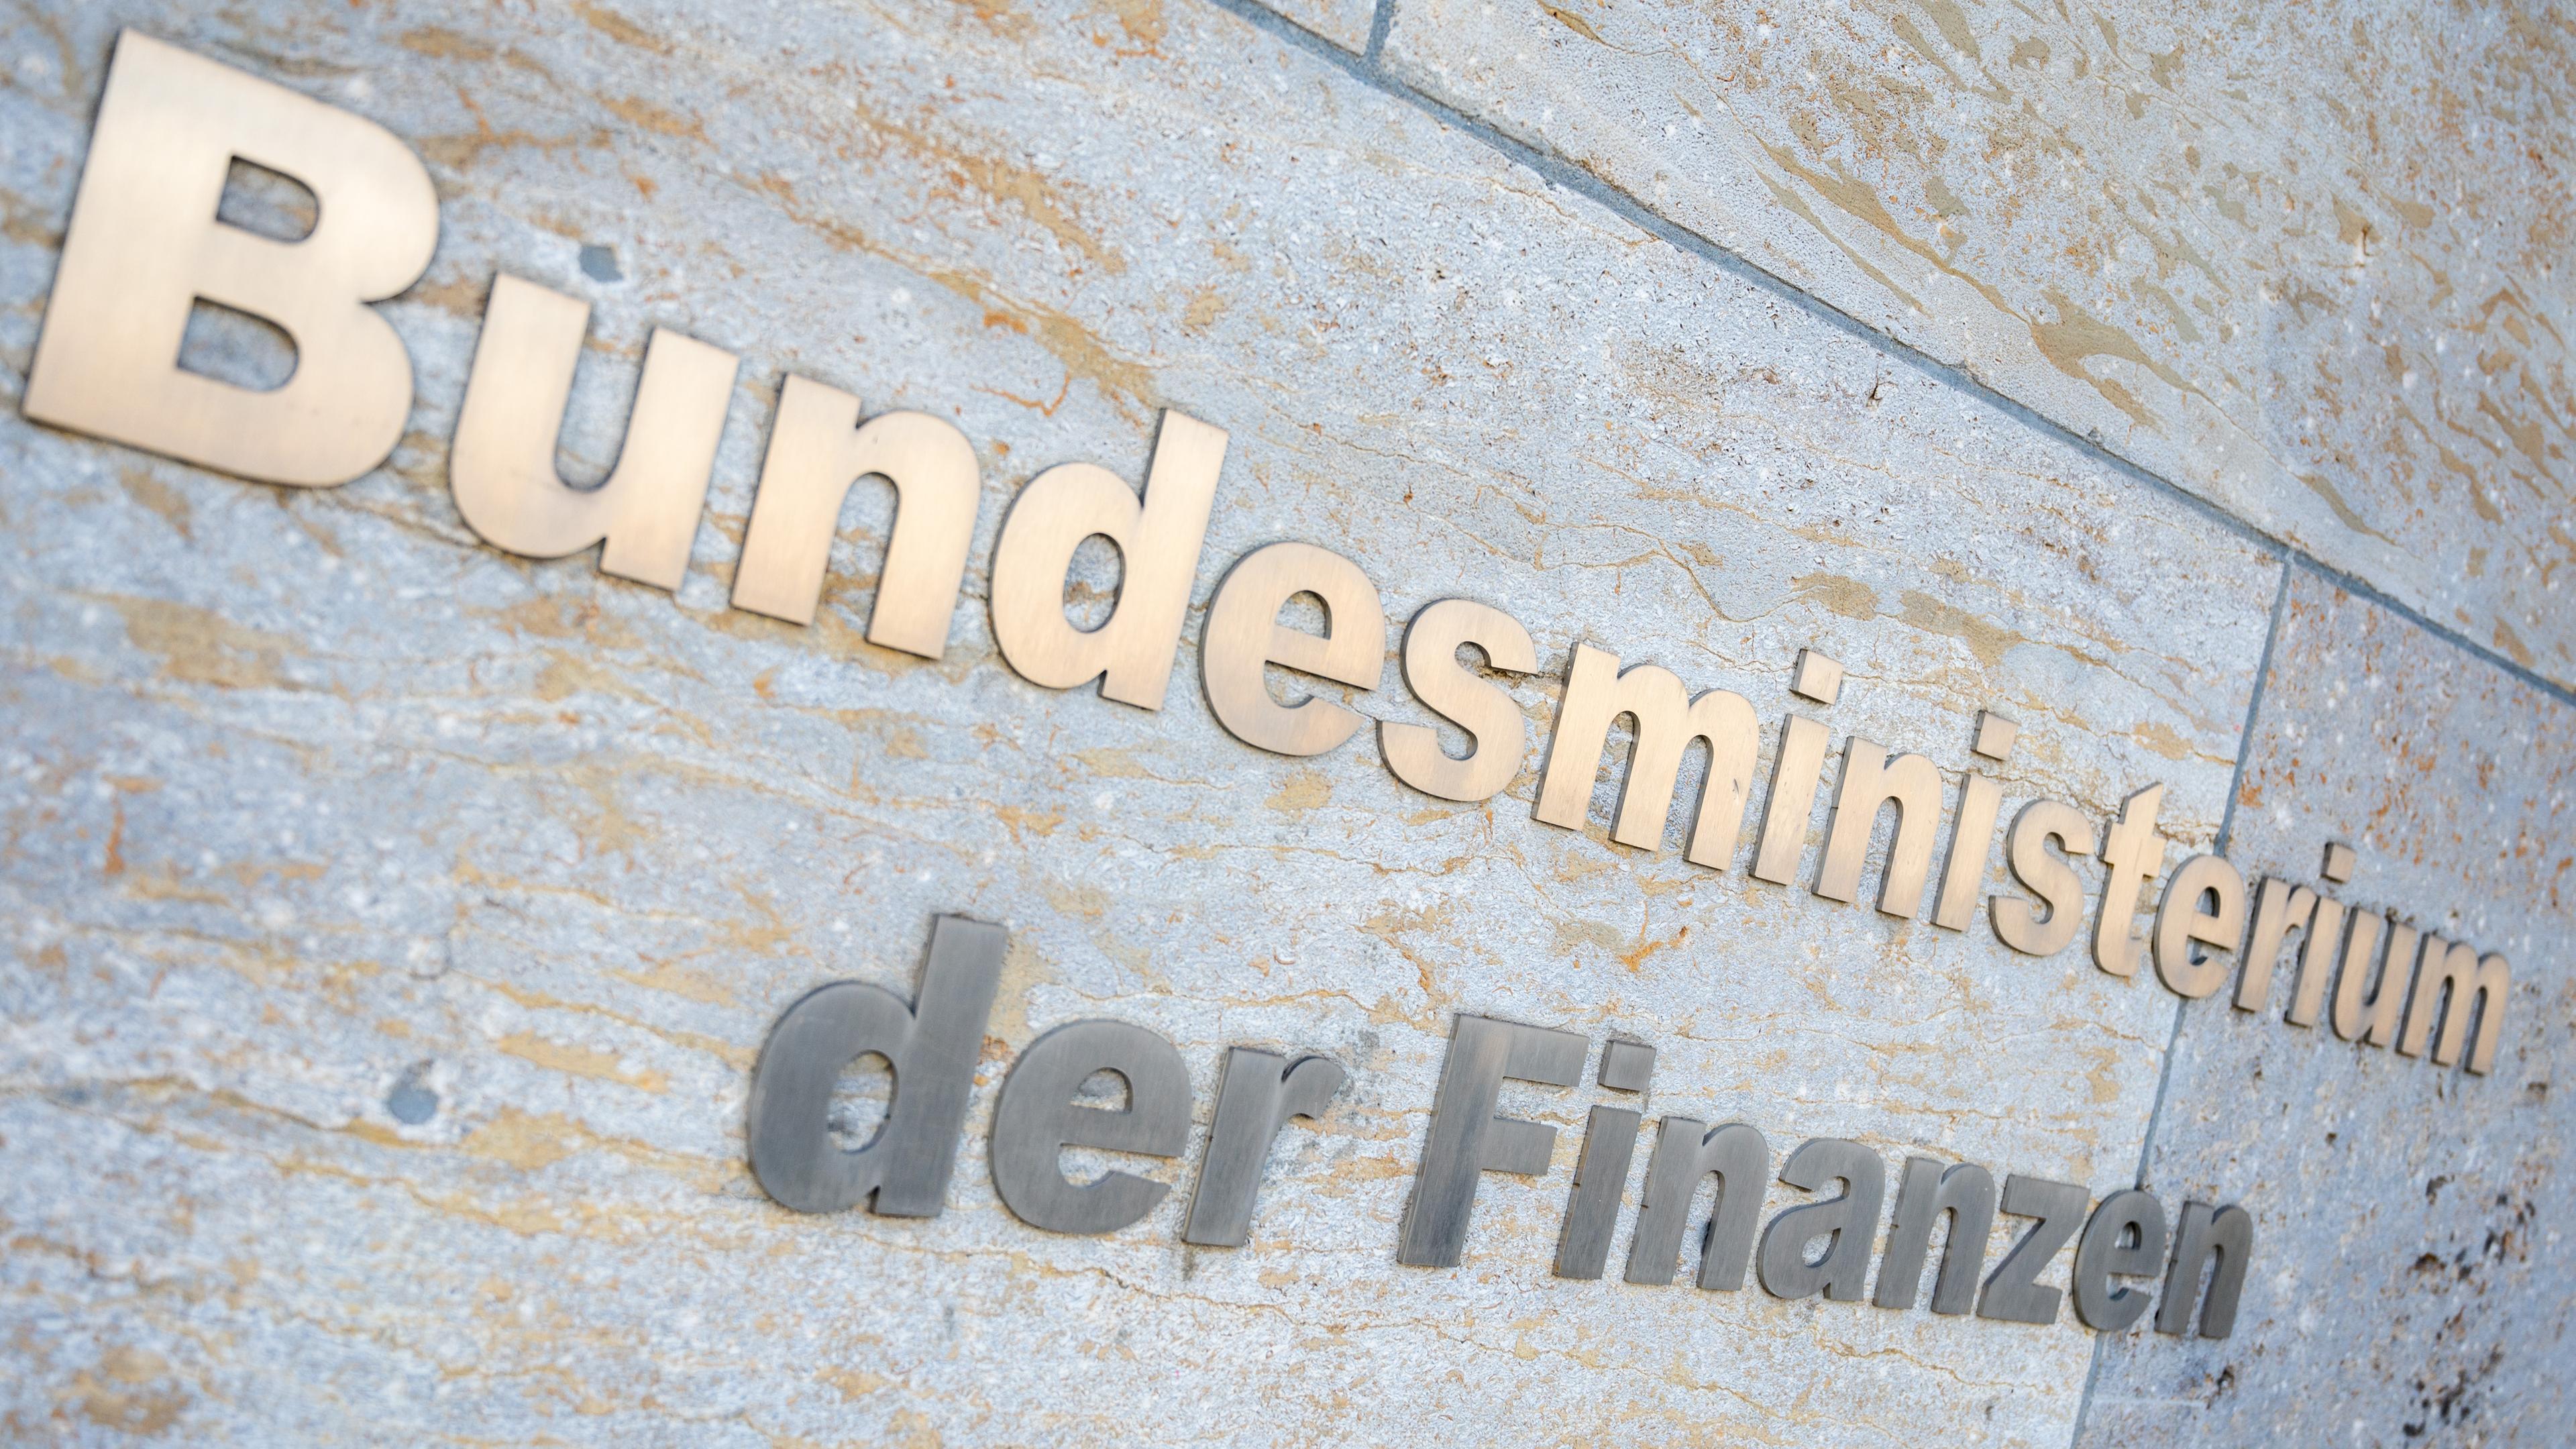 Berlin: Der Schriftzug "Bundesministerium der Finanzen" ist außen am Gebäude des Bundesfinanzministeriums zu lesen. 